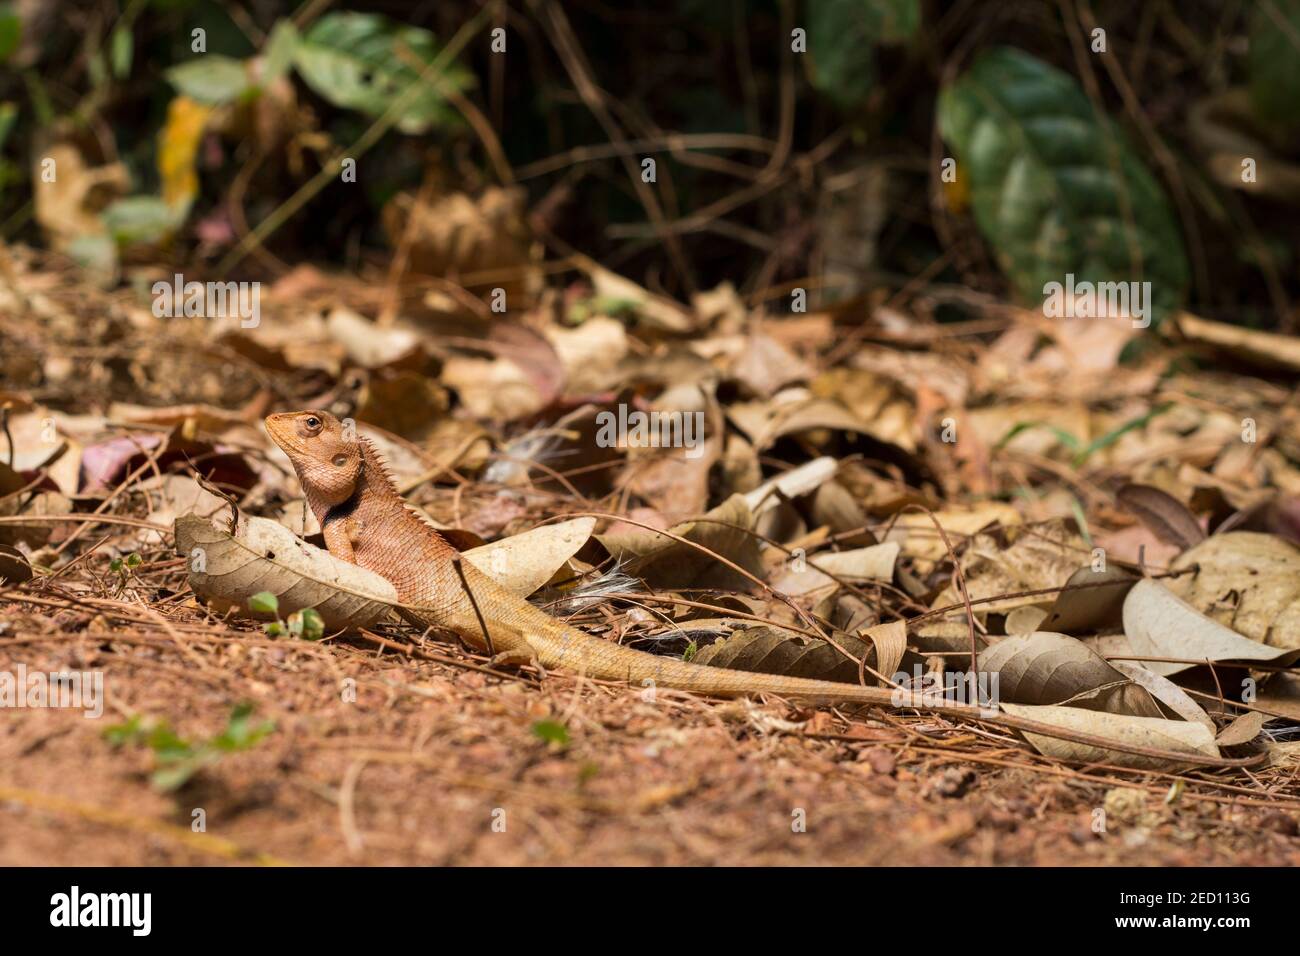 Orangefarbene Eidechse in trockenen Blättern unter Sonne. Braune Leguane versteckt sich durch Mimikry. Exotisches Tier in der wilden Natur. Bewohner des tropischen Dschungels. Eidechse schaut hinein Stockfoto